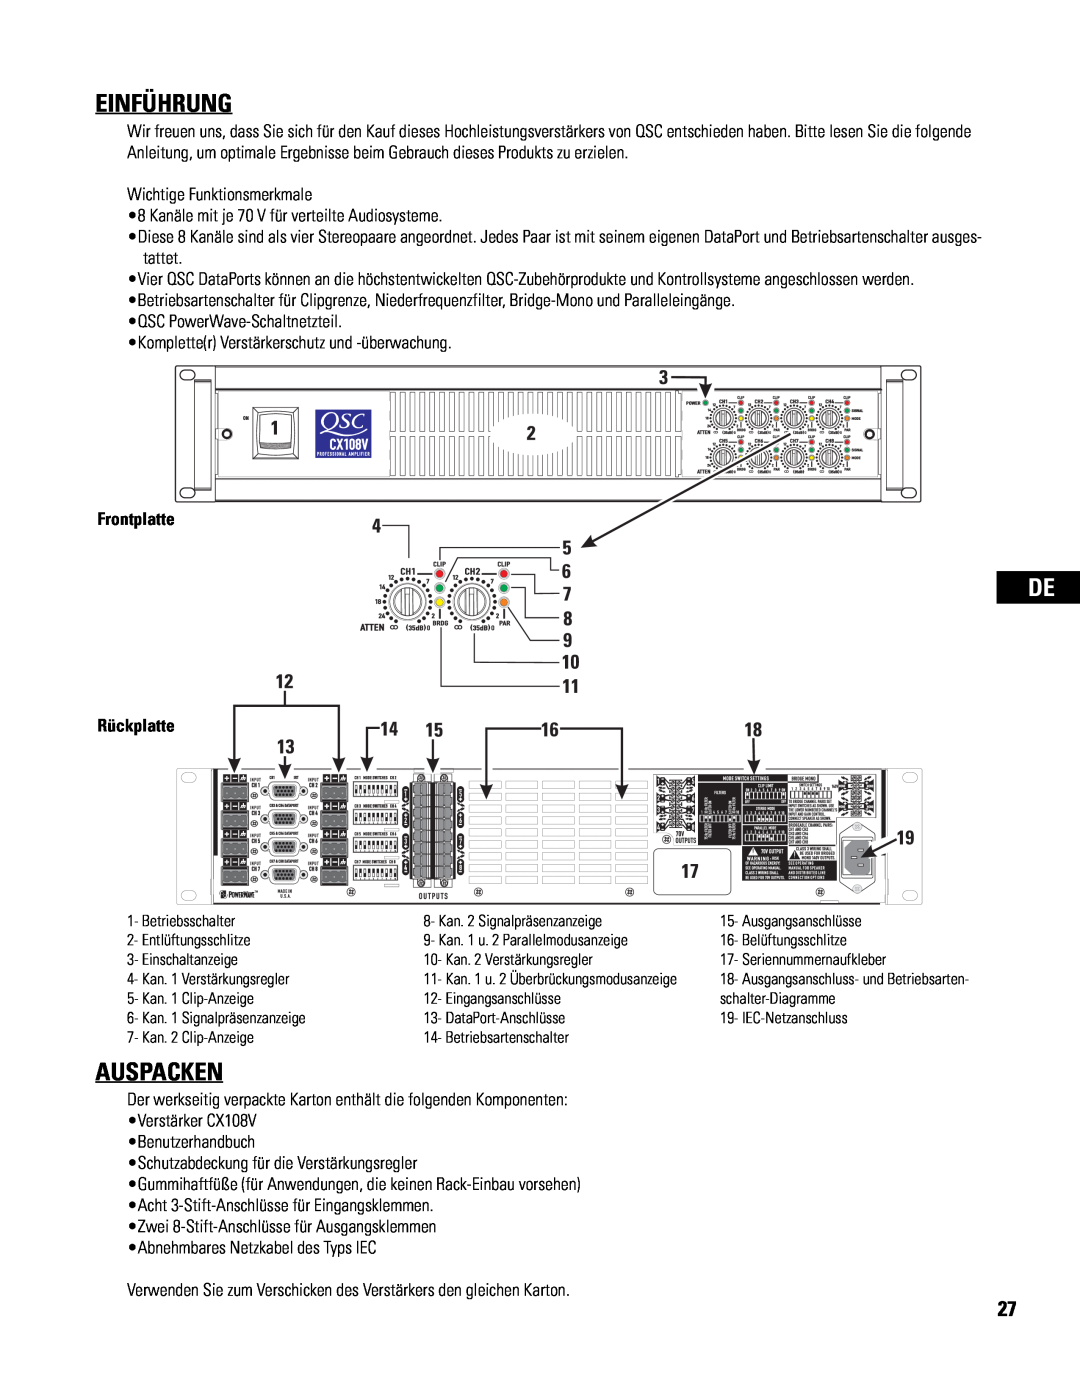 QSC Audio CX108V user manual Einführung, Auspacken, Frontplatte, Rückplatte 